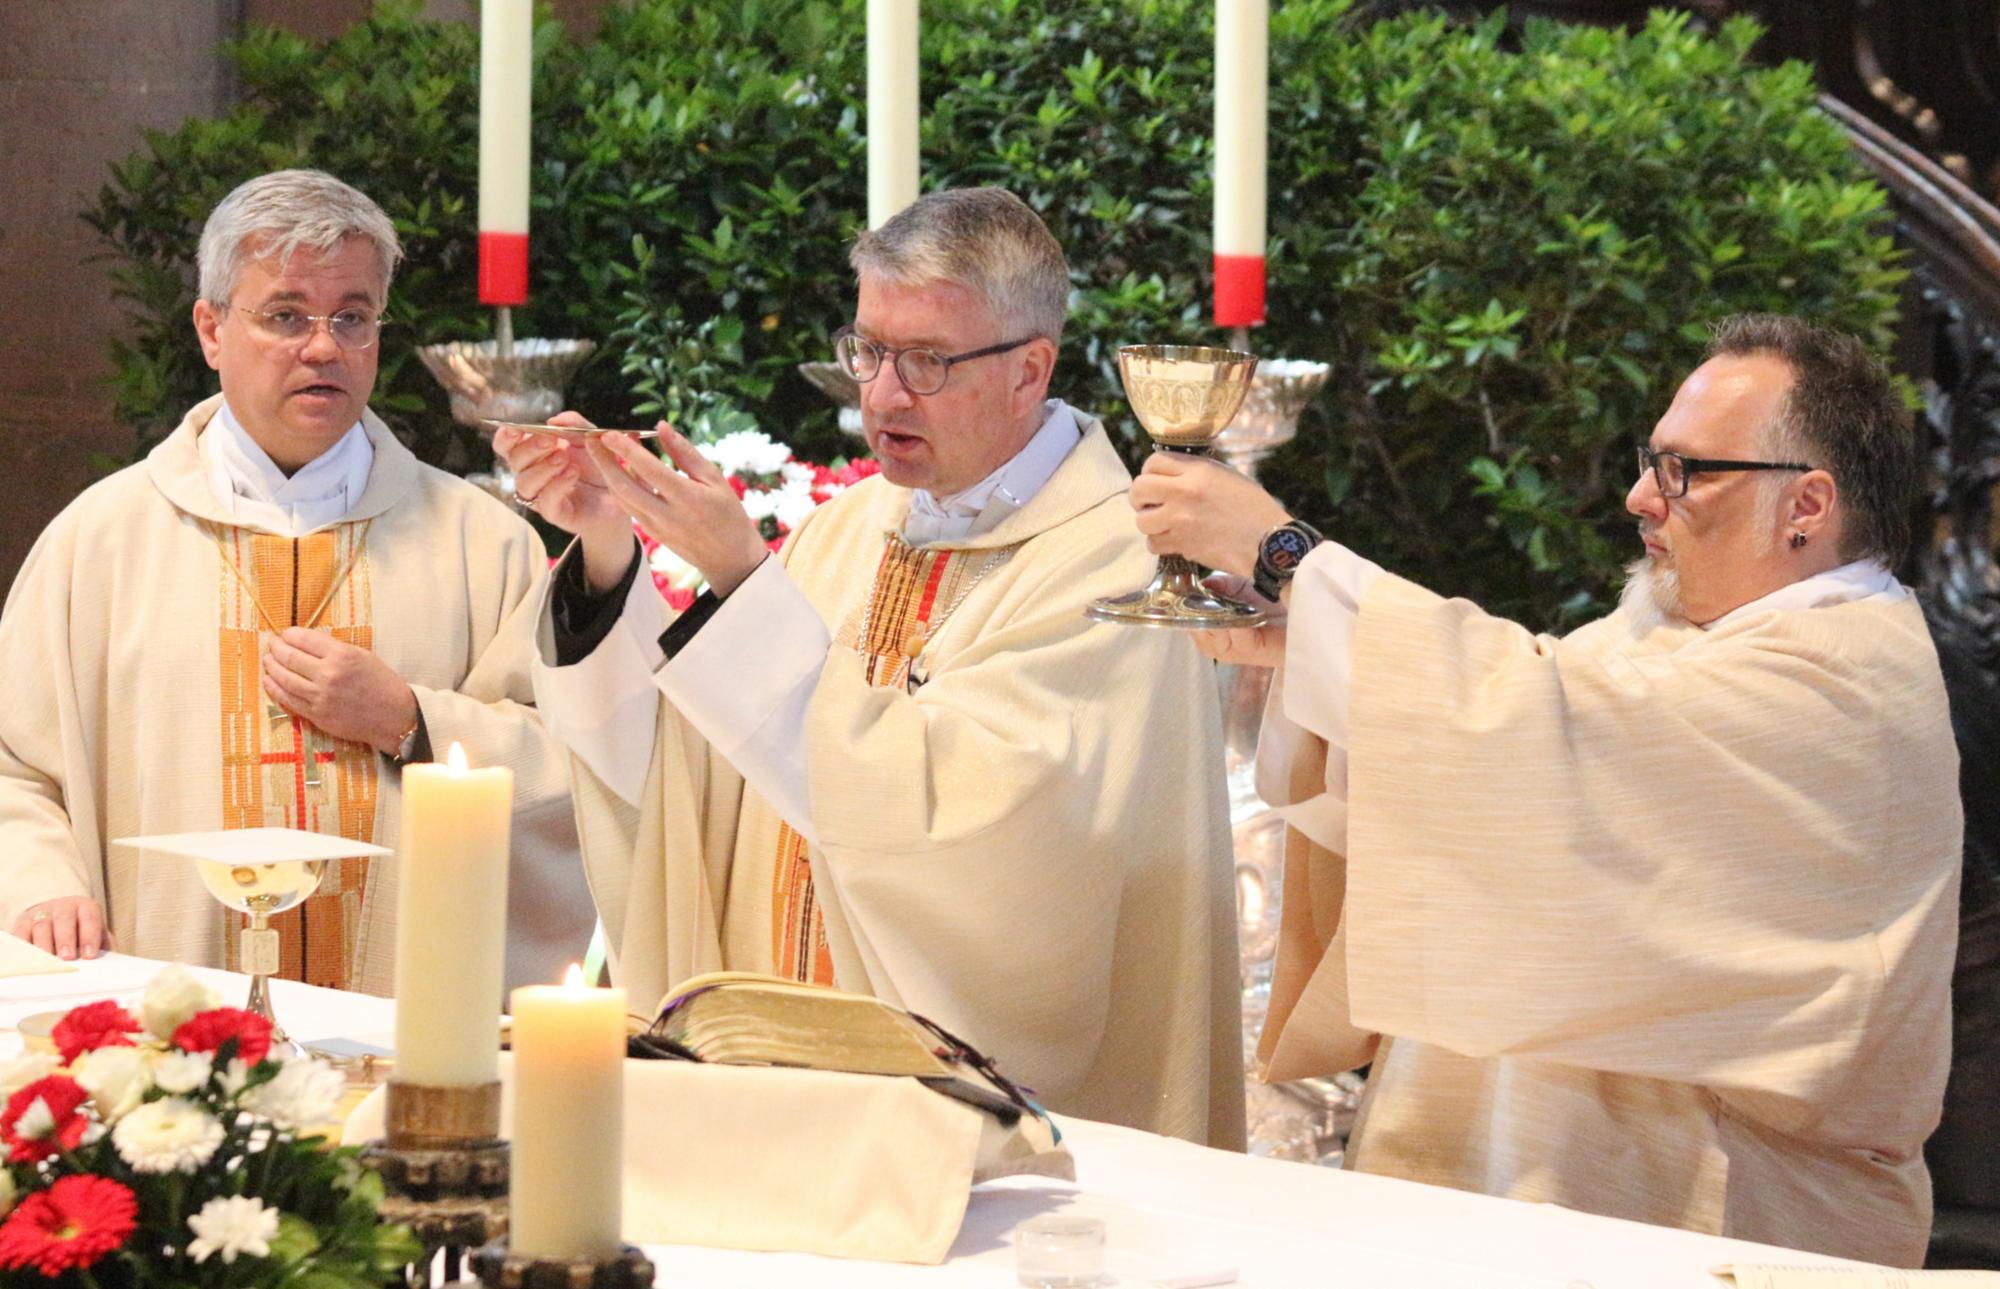 Mainz, 4. Juni 2022: Thomas Ferdinand (rechts) bei der Eucharistiefeier mit Weihbischof Dr. Udo Markus Bentz (links) und Bischof Peter Kohlgraf. (c) Bistum Mainz / Blum